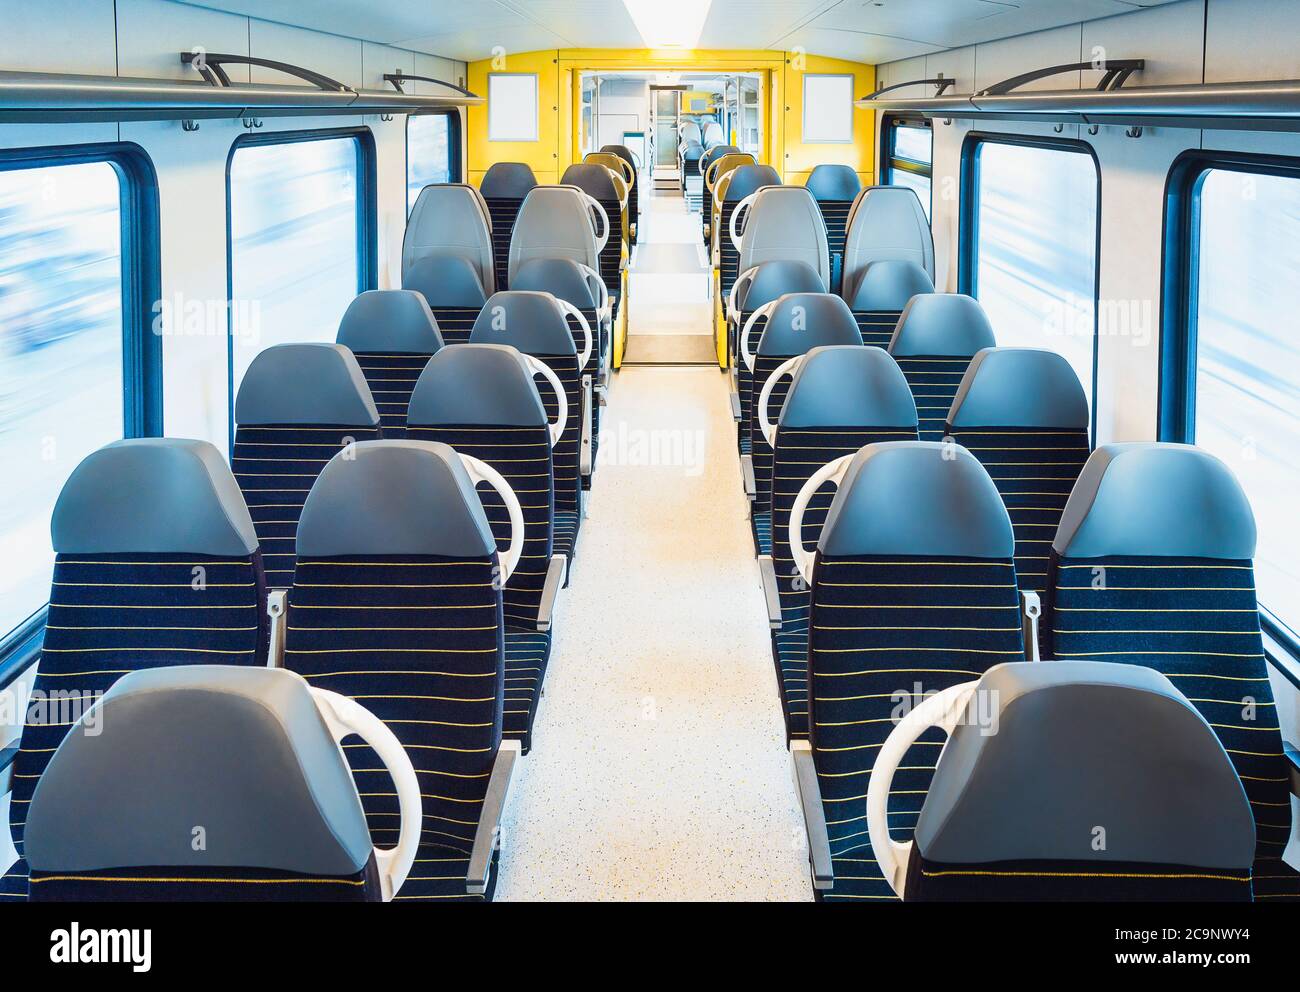 Personenzug Innenraum mit leeren Sitzen auf zwei Reihen, in Bewegung, in hellem Licht. Bahnreisen in Deutschland. Moderne öffentliche Verkehrsmittel. Keine Reisenden Stockfoto